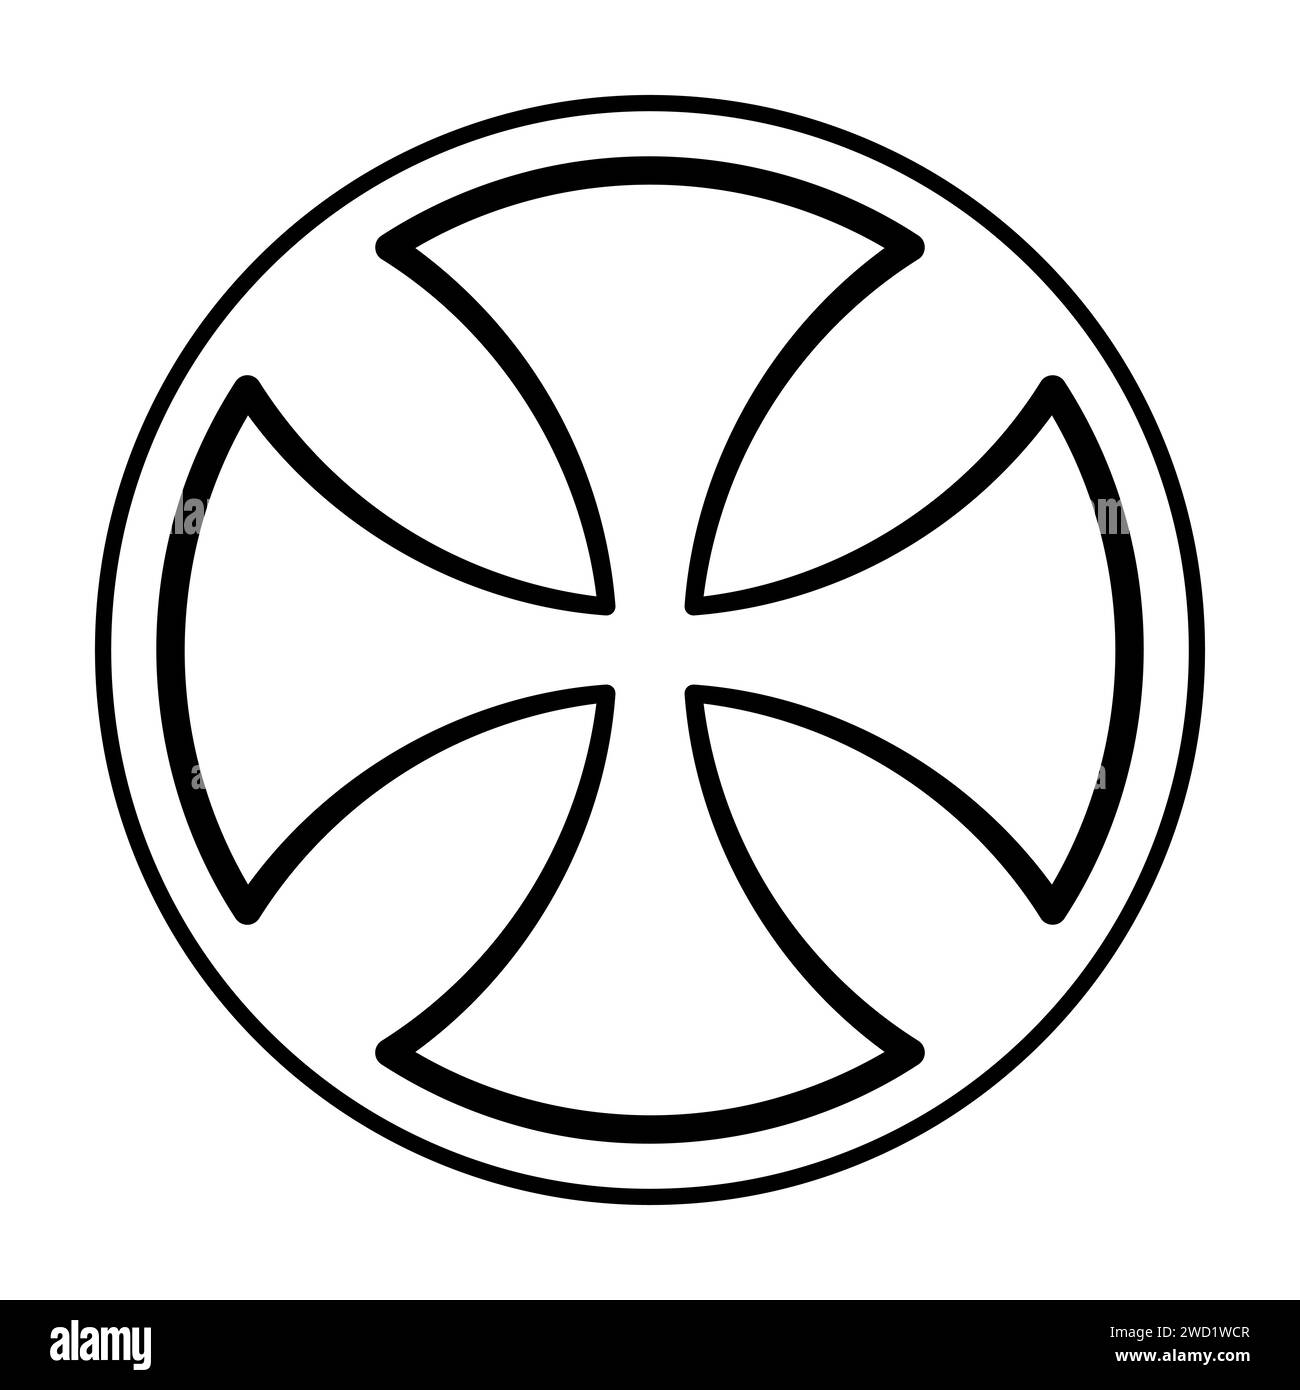 Croce celtica antica, una croce con estremità arrotondate delle braccia, a volte chiamata alisee crociato, nota anche come formia incrociata. Simbolo e segno. Foto Stock